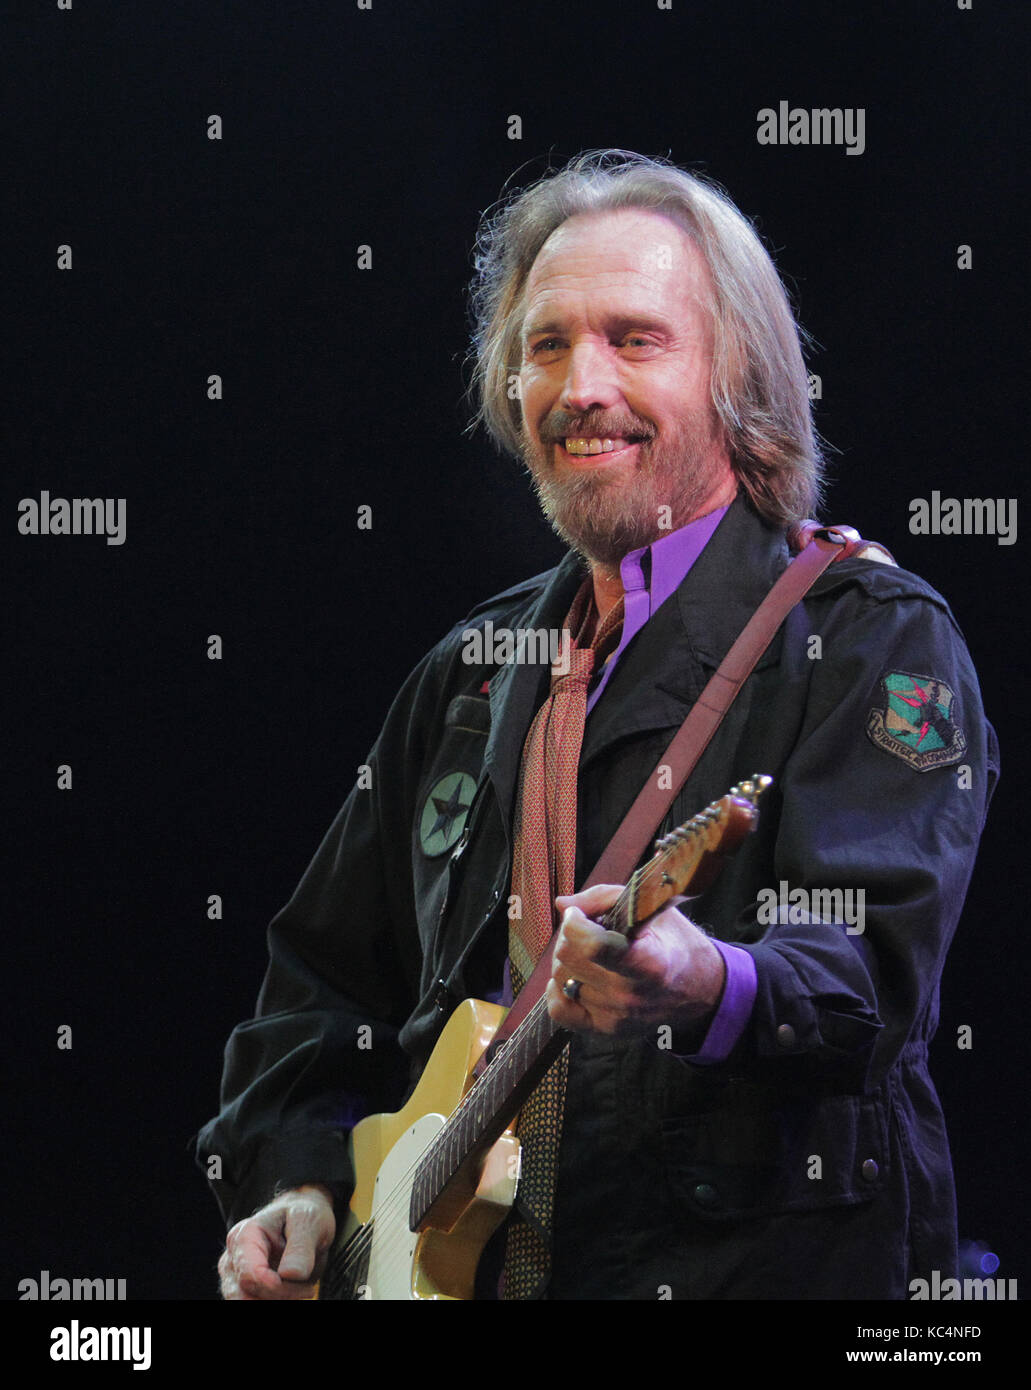 Tom Petty (oct. 20, 1950 - oct. 02, 2017) es un músico estadounidense,  cantante, compositor, multi-instrumentista y productor discográfico. Él es  mejor conocido como el cantante de Tom Petty y los heartbreakers,